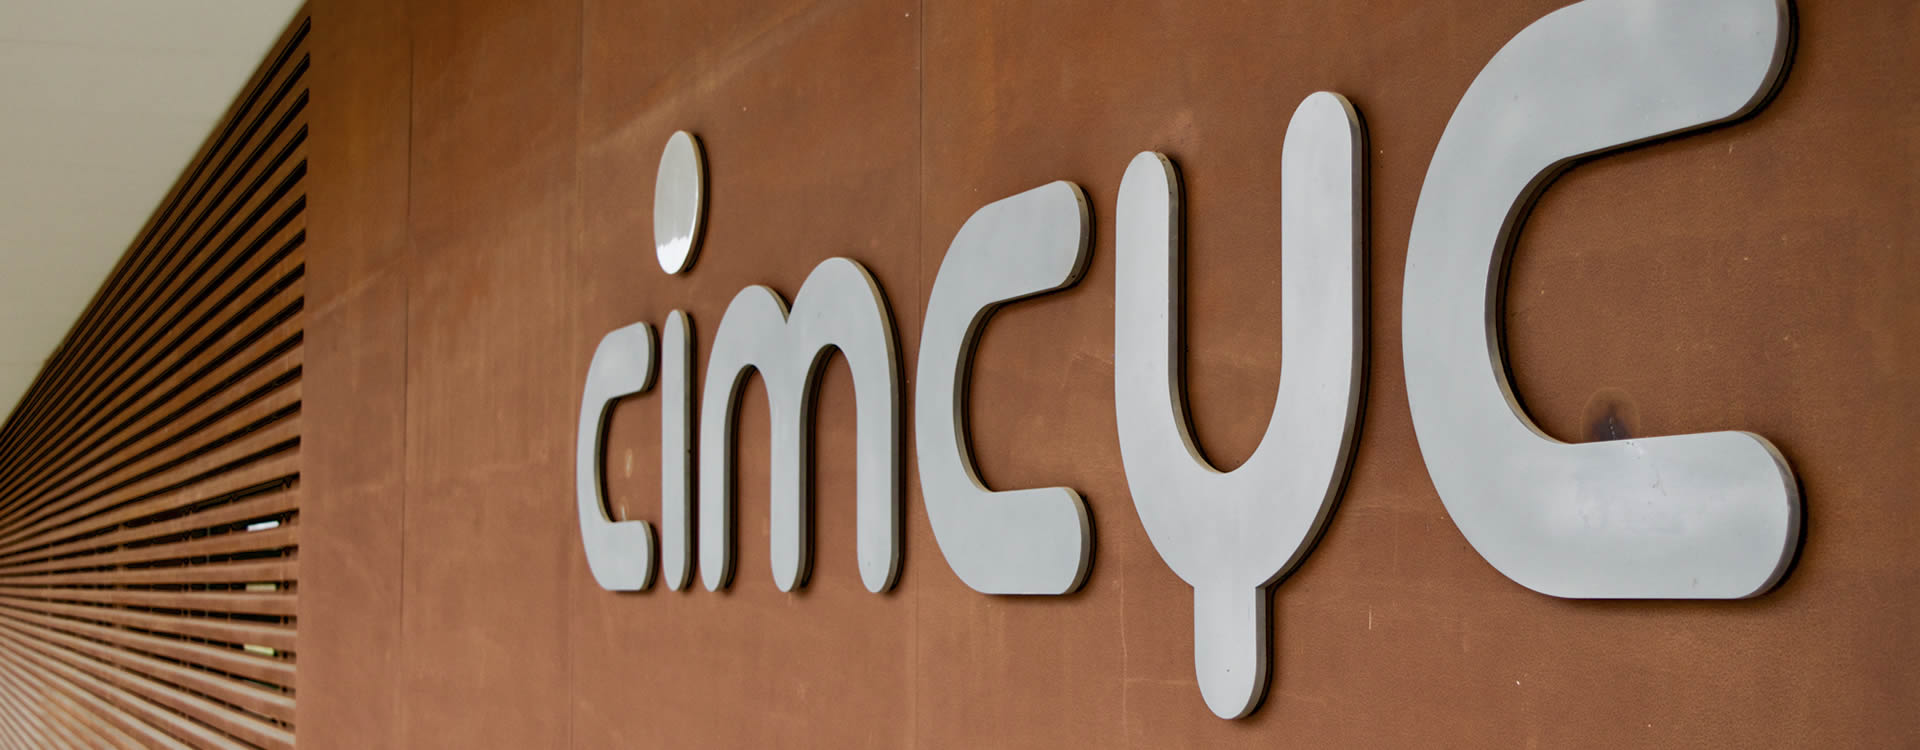 CIMCYC / PNinsula Group